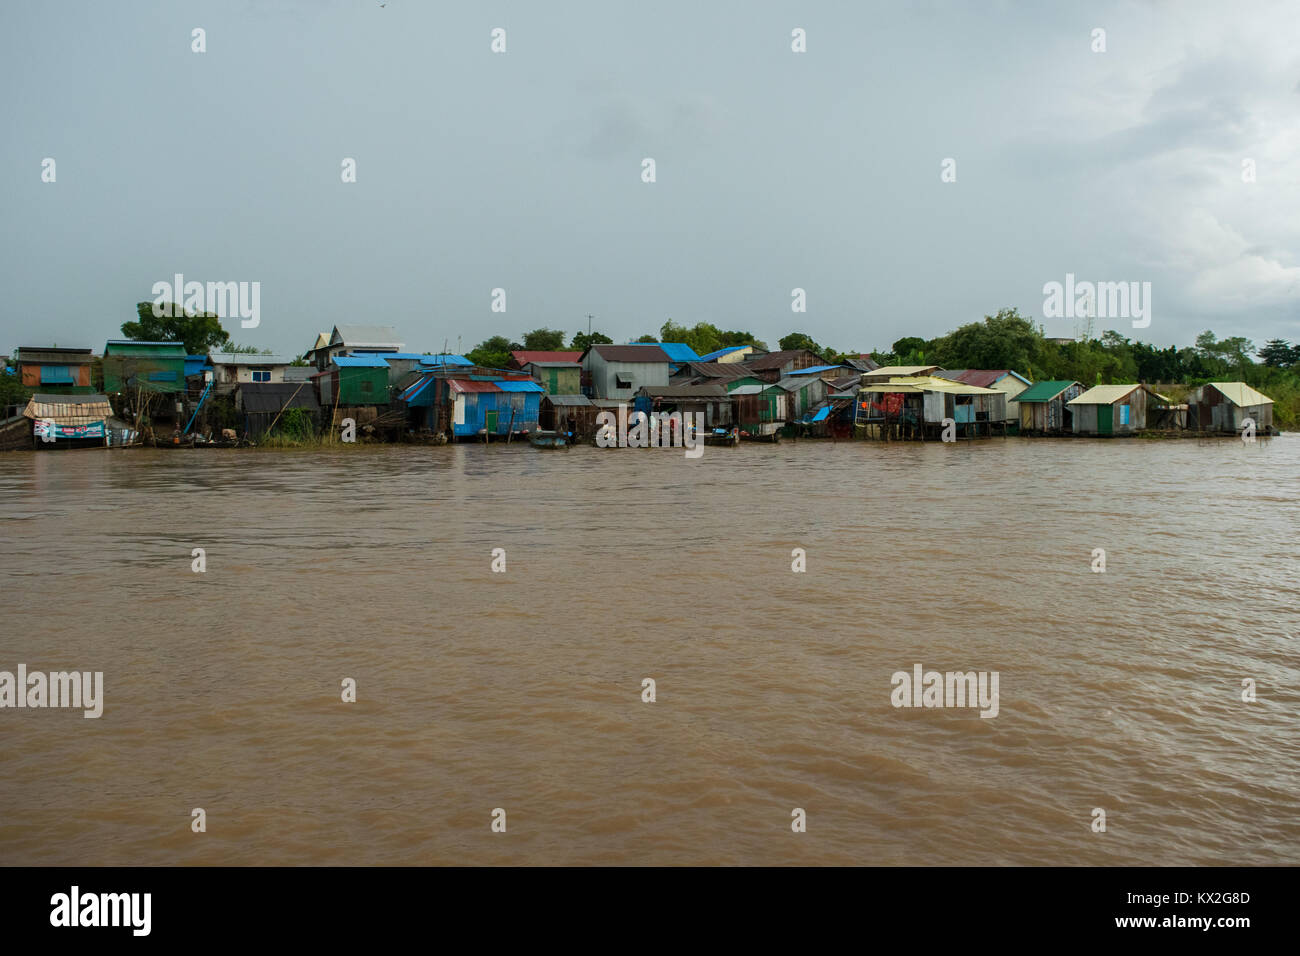 Una piccola bidonville, squatter insediamento di povere case di legno e lamiere grecate, shanties baracche accanto al fiume Mekong, Phnom Penh Cambogia Foto Stock